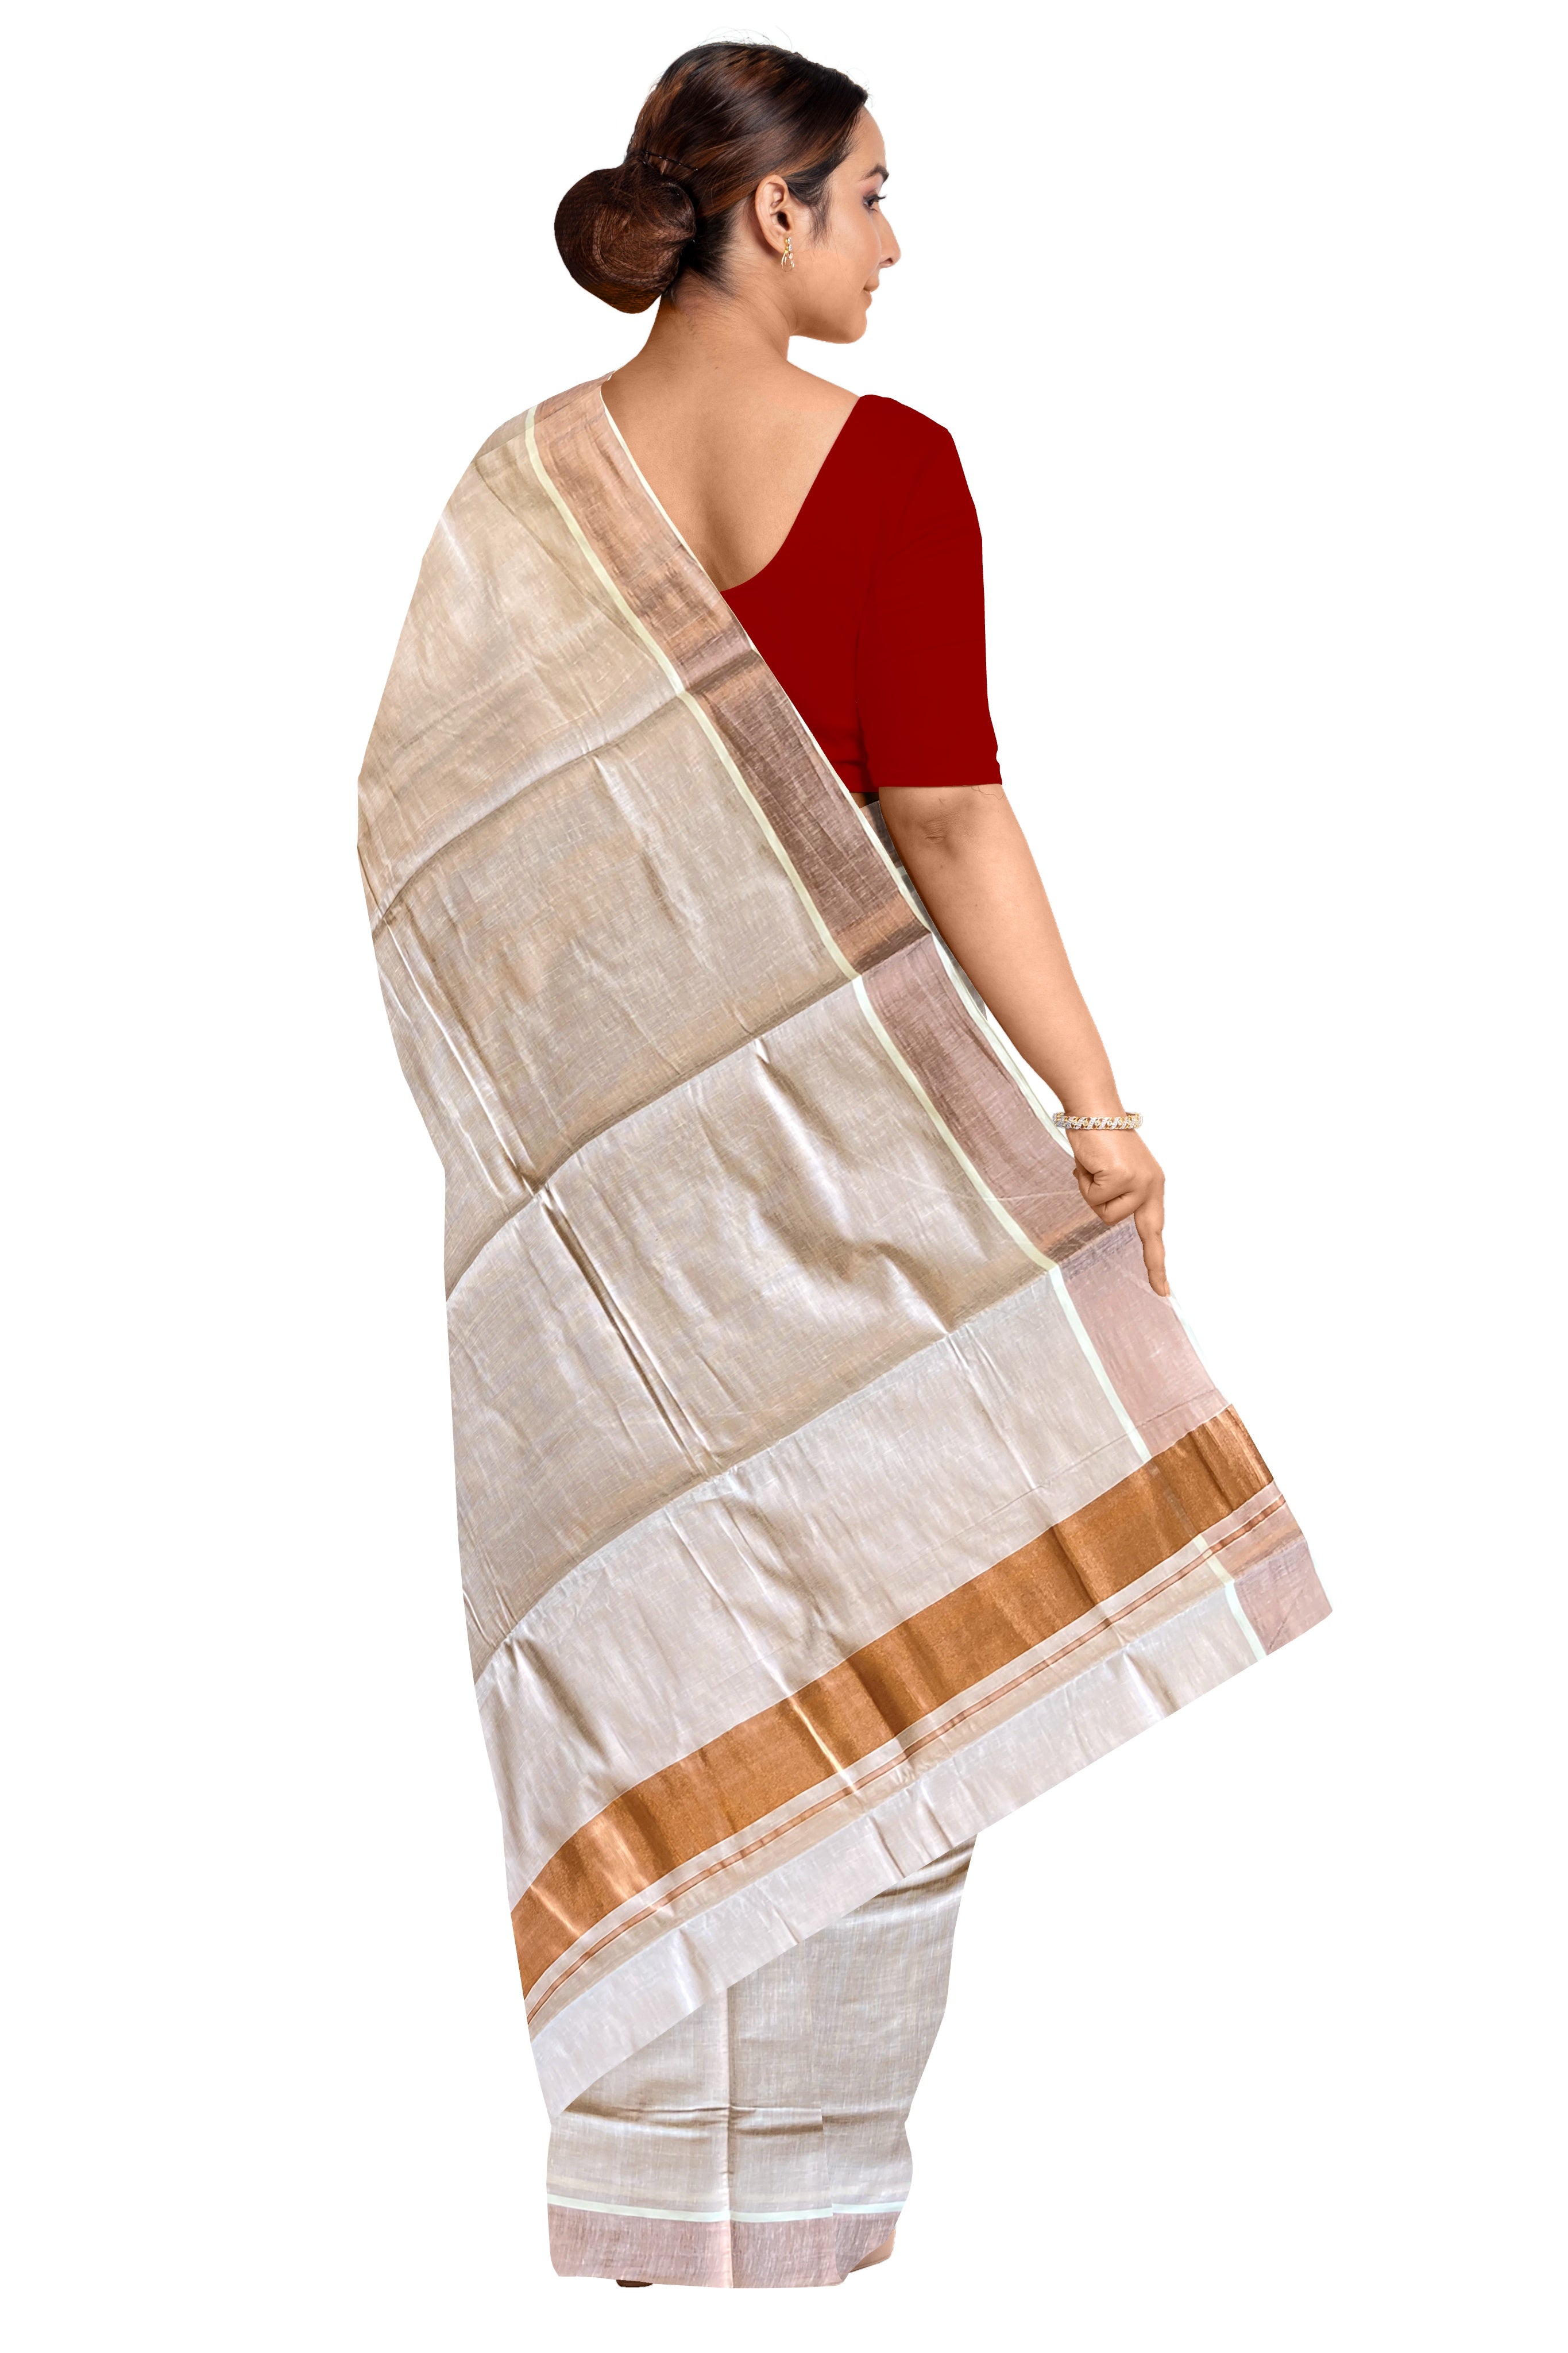 Kerala Kasavu Onam Saree With Blouse/Cotton/Off white – Onezeros.in